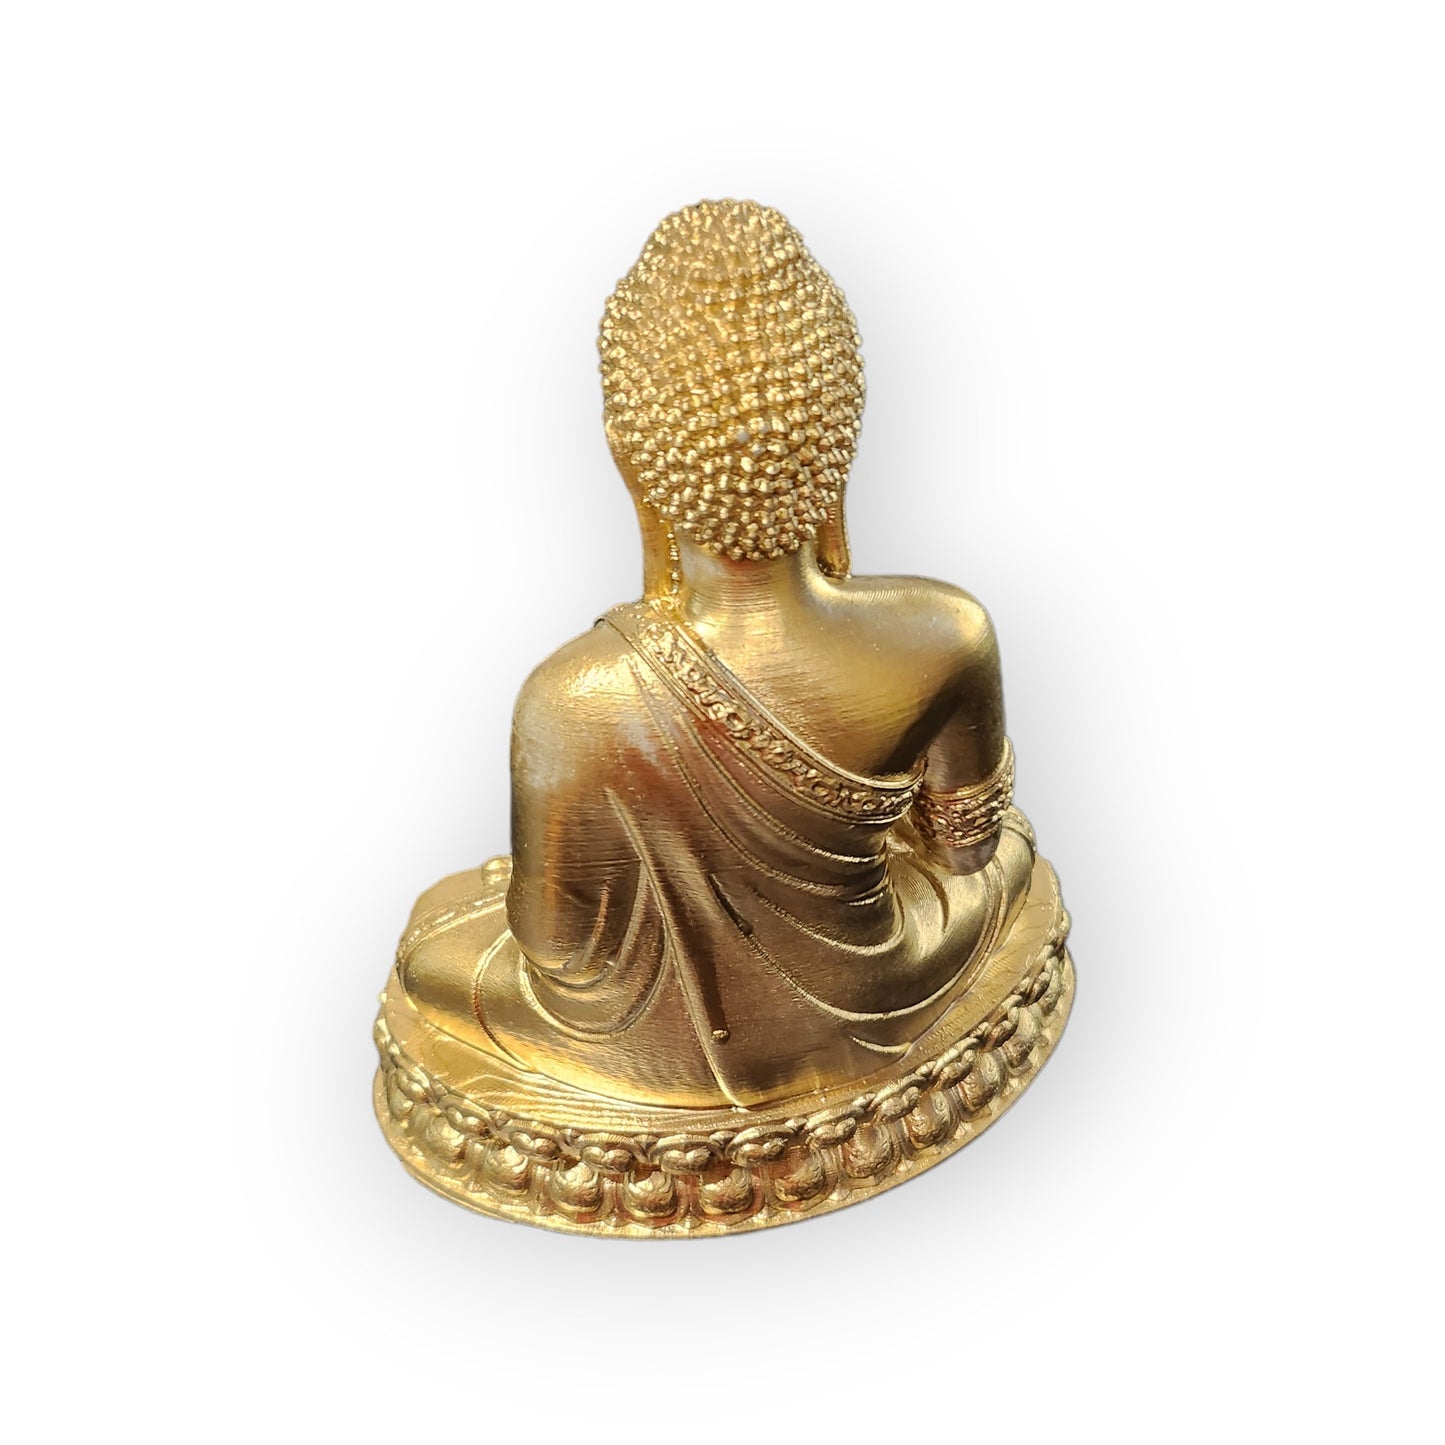 3D Printed Buddha Figurine Earth bhumisparsha mudra 7" Tall